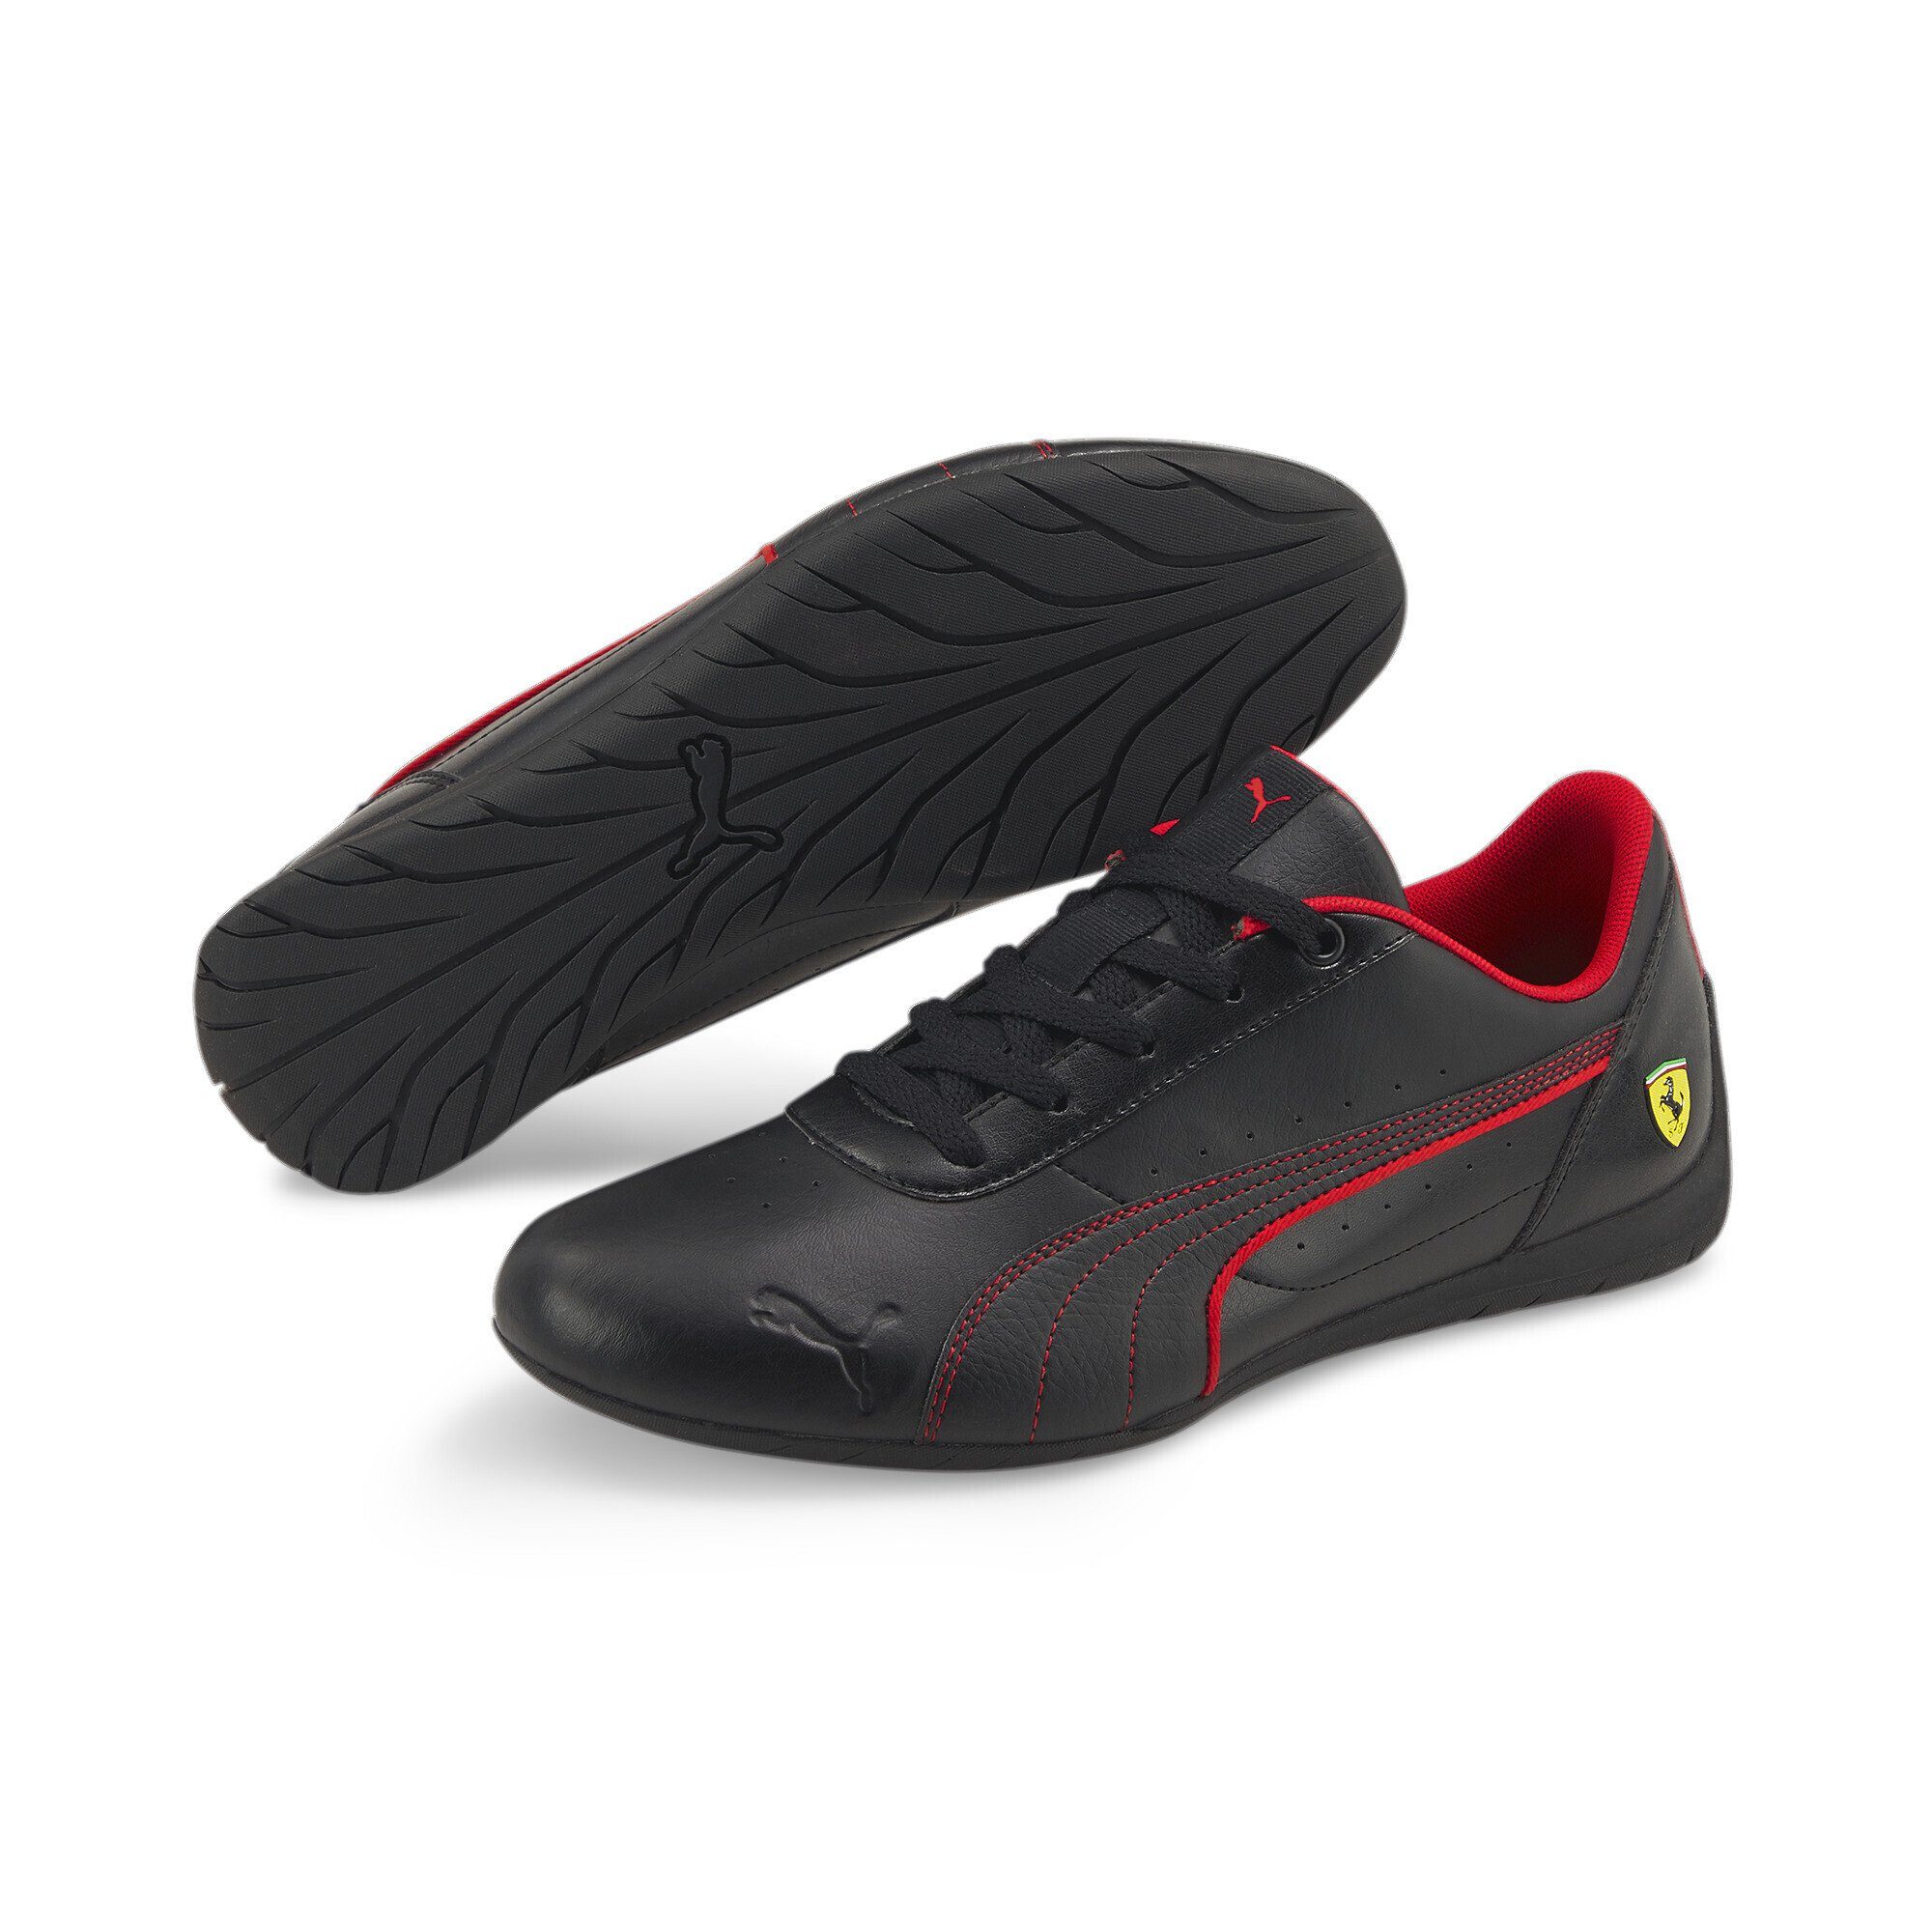 PUMA Scuderia Ferrari Neo Cat Motorsport Schuhe Erwachsene Sneaker,  Obermaterial aus Kunstleder